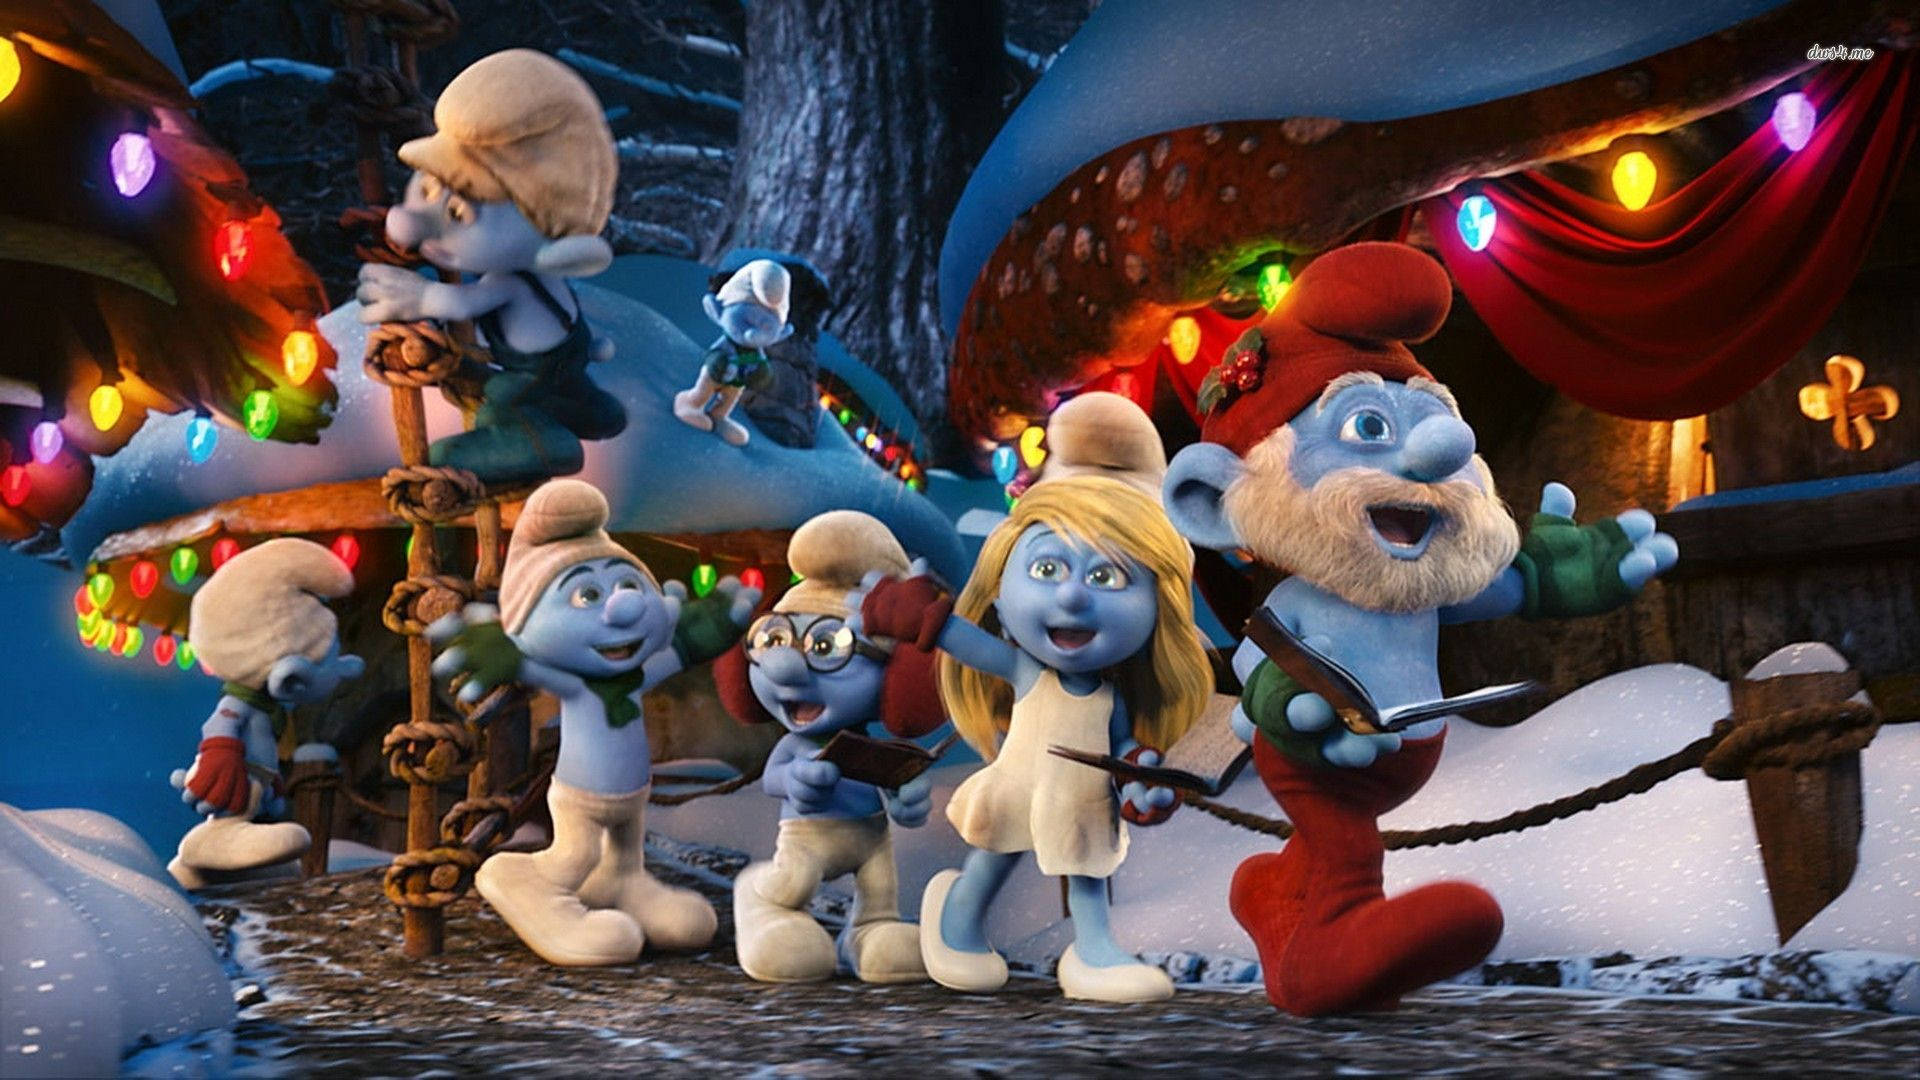 The Smurfs A Christmas Carol Wallpaper